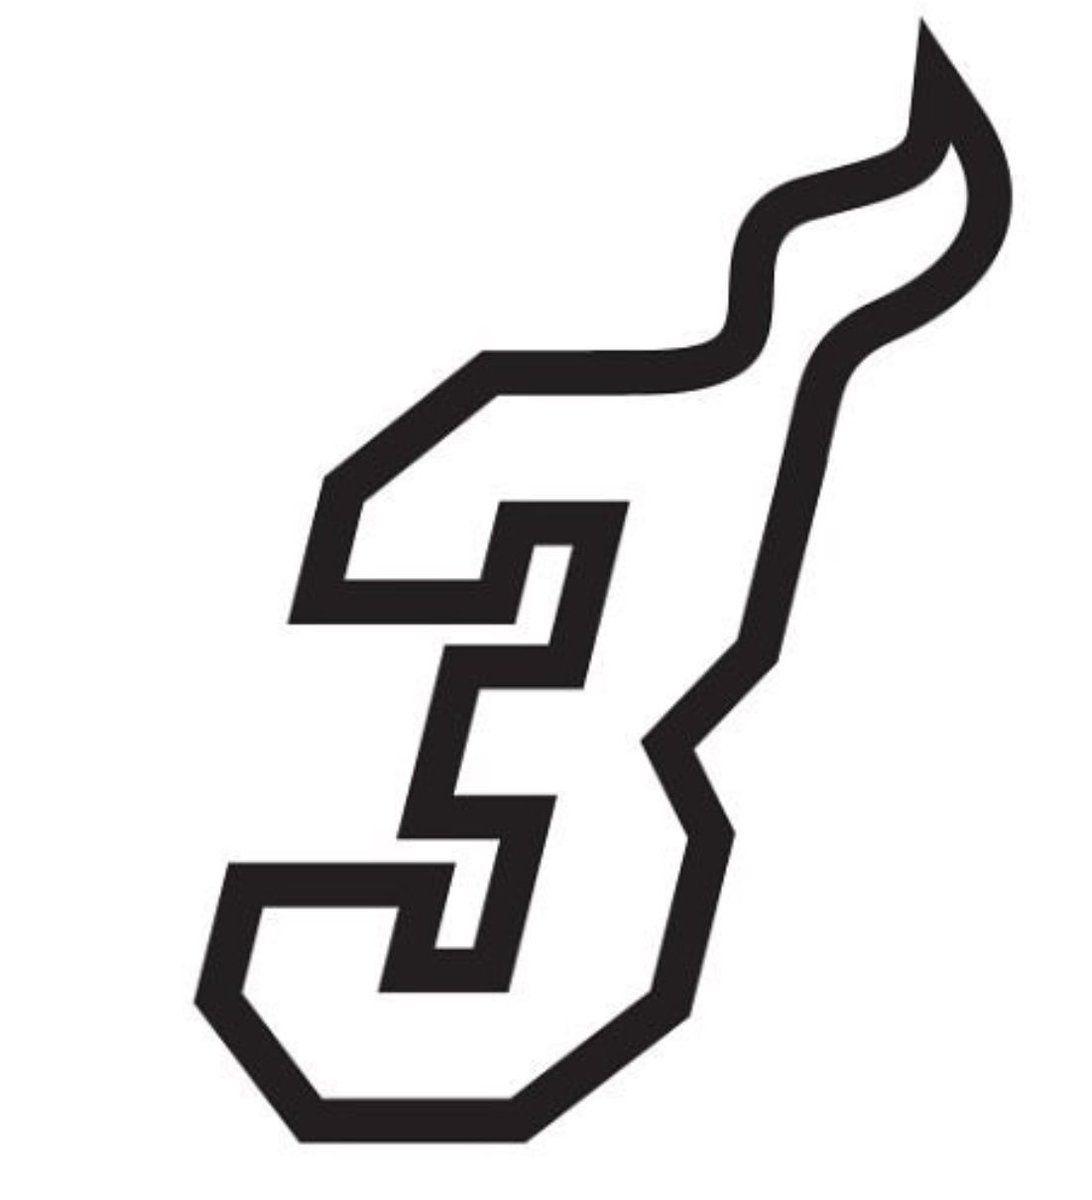 Dwyane Wade Logo - Darren Rovell't ever remember a team making a logo